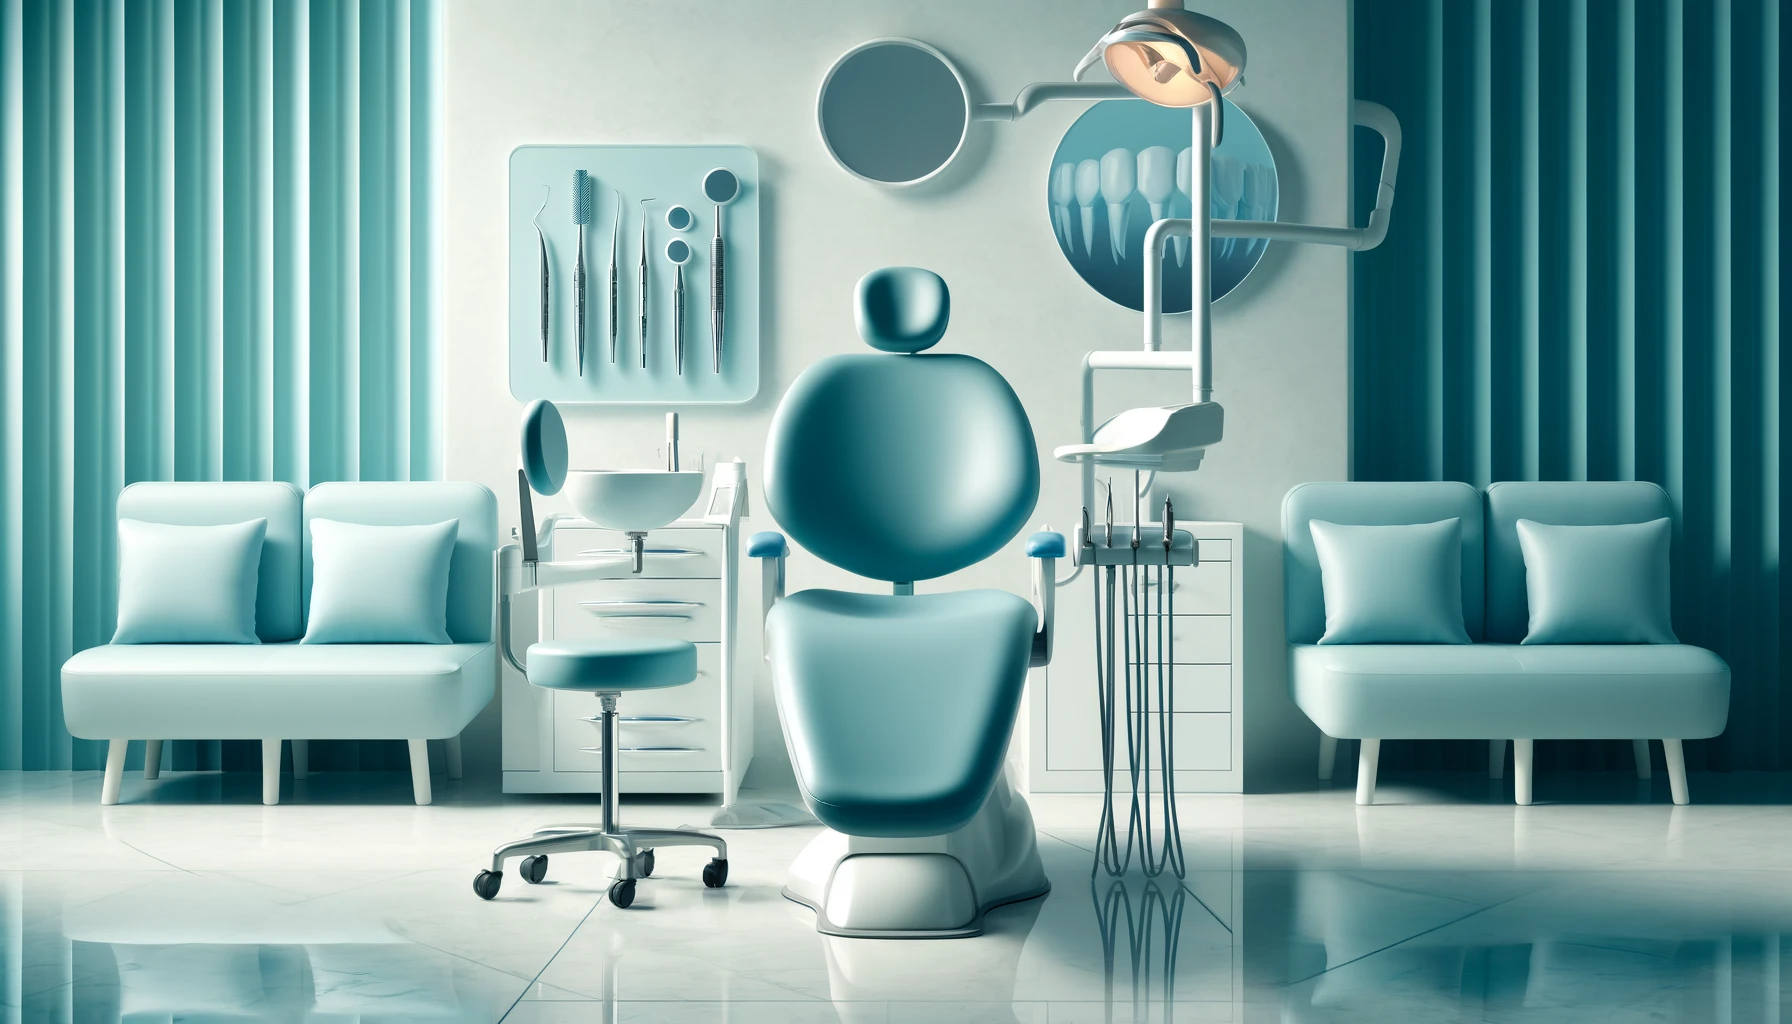 Moderne tannlegekontor med tannkroner pÃ¥ et bord, fremhever pÃ¥litelighet og ekspertise